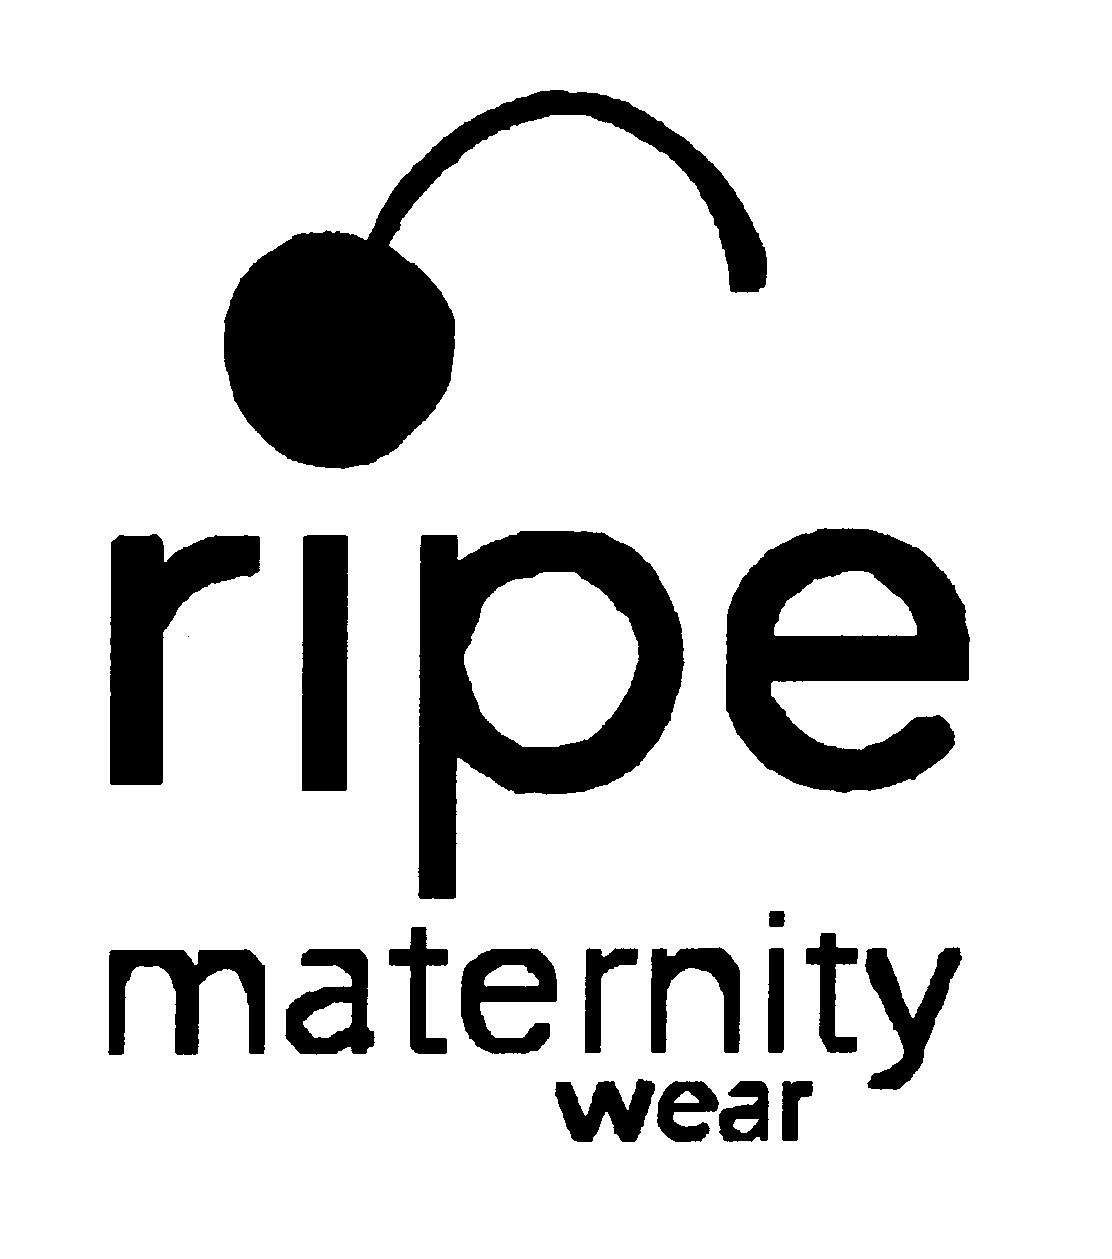 RIPE MATERNITY WEAR - Ripe Maternity Wear Pty. Ltd. Trademark Registration